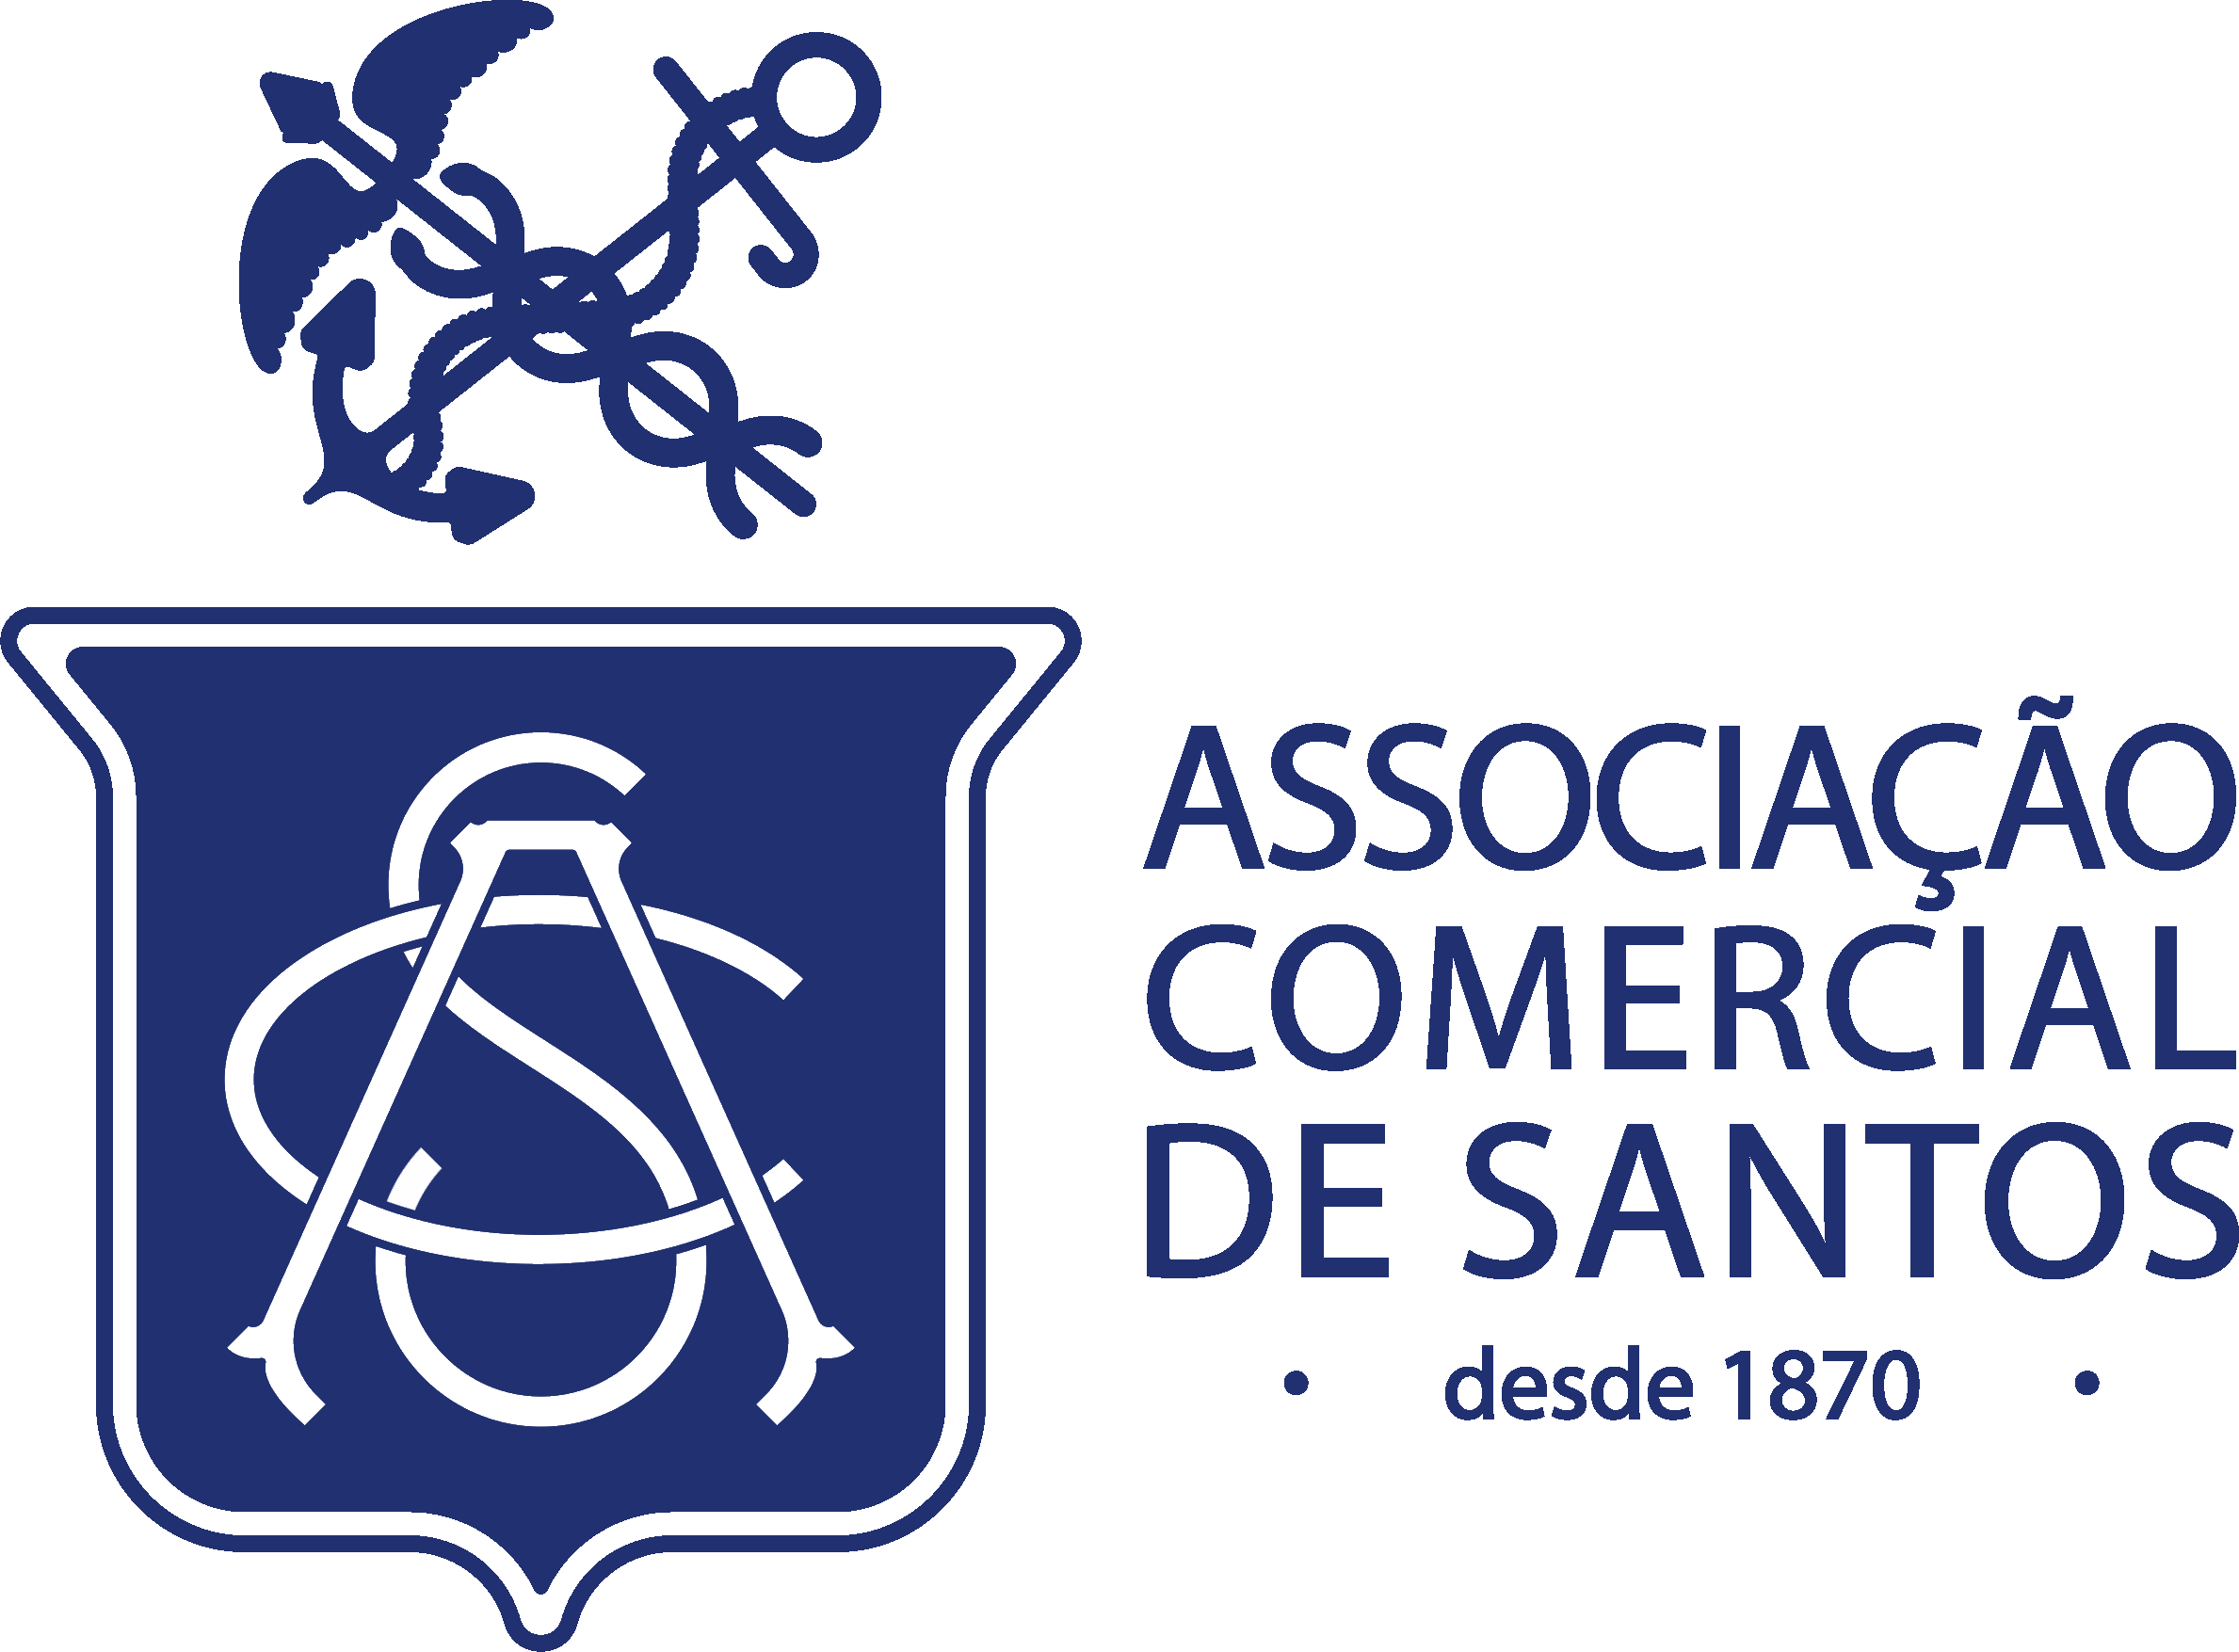 Associação Comercial de Santos